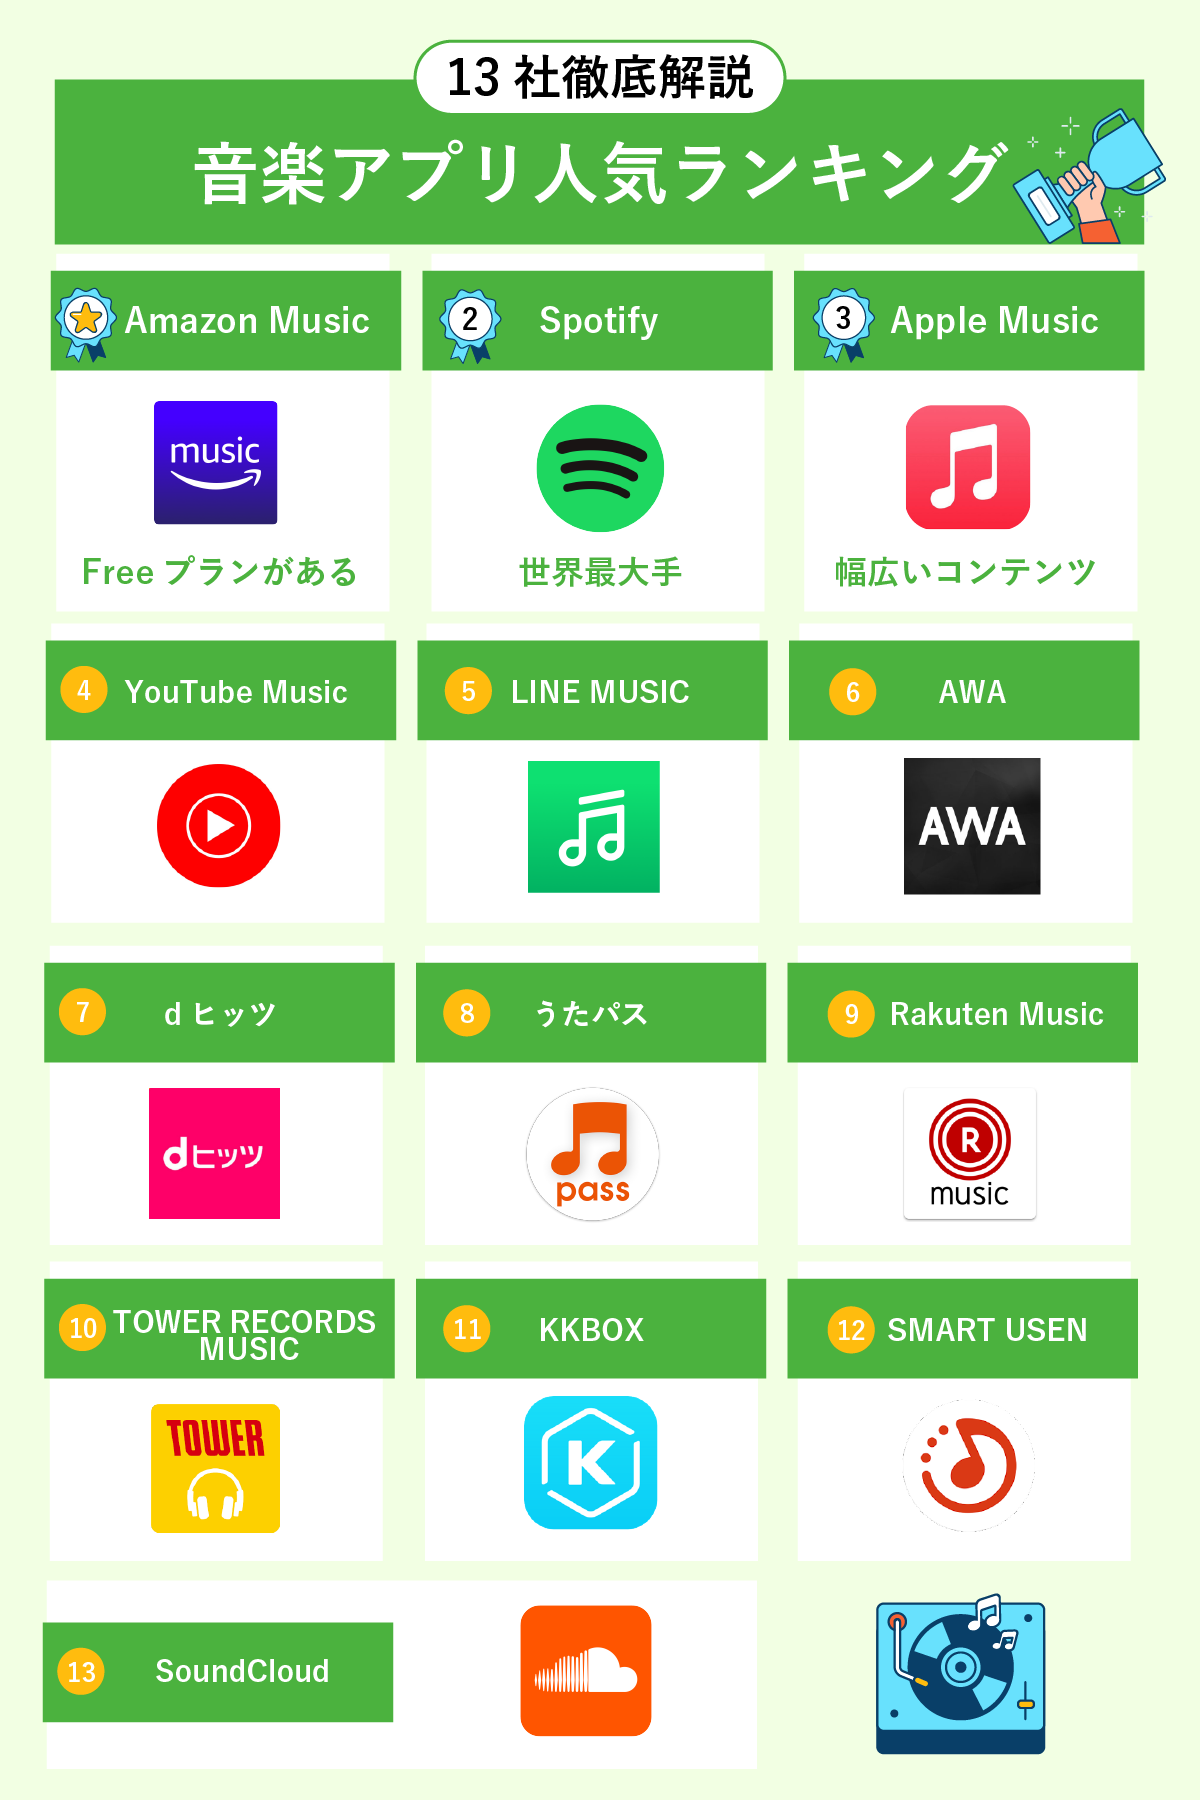 【13社徹底解説】音楽アプリ人気ランキング